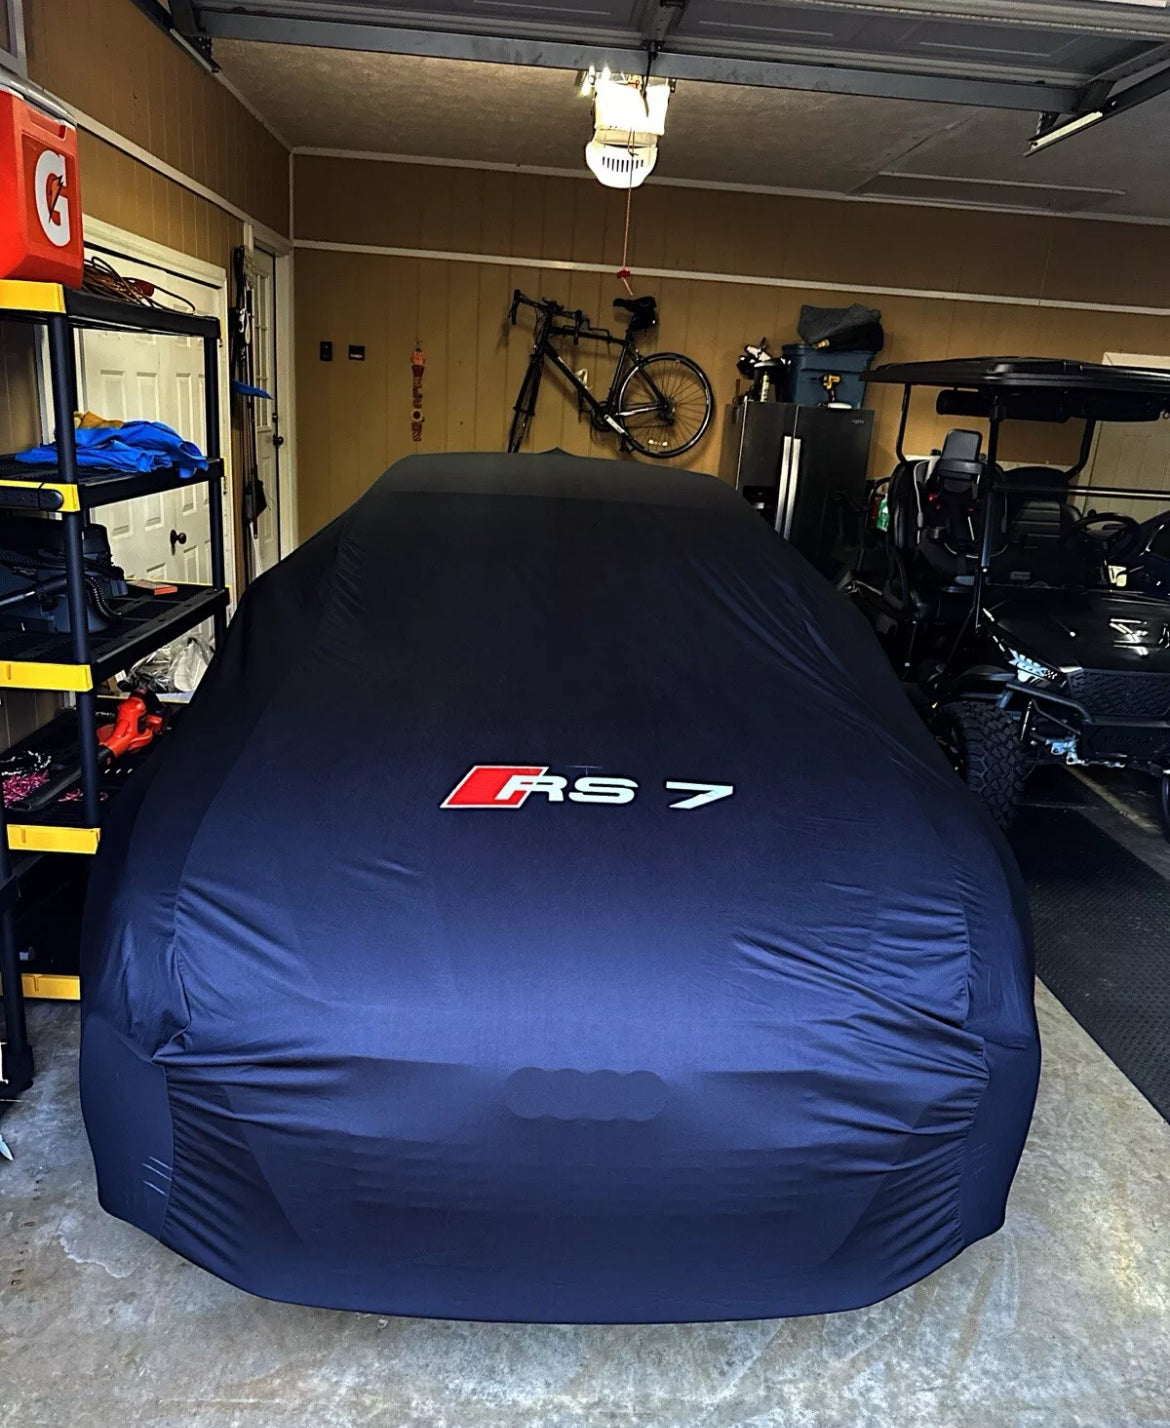 Audi RS3 RS4 RS5 RS6 Abdeckung✅Maßgeschneidert für Ihr Fahrzeug✅Audi-Autoabdeckung✅RS-Abdeckung✅Audi RS-Autoschutz✅RS3-Autoabdeckungen✅RS4-Autoabdeckung✅ 